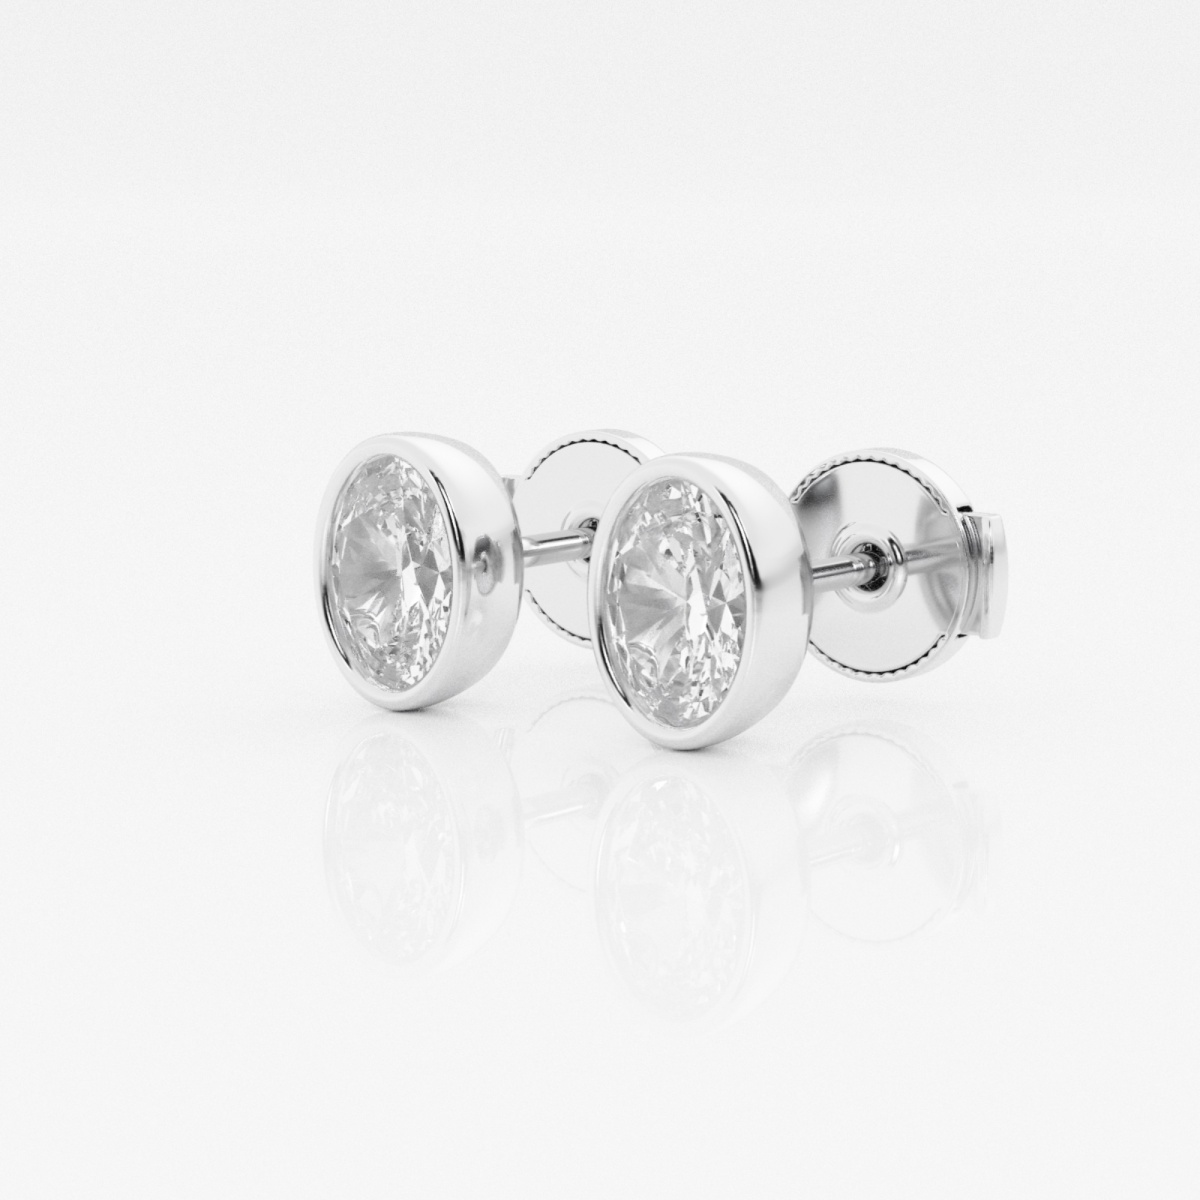 1 ctw Oval Lab Grown Diamond Bezel Set Solitaire Stud Earrings